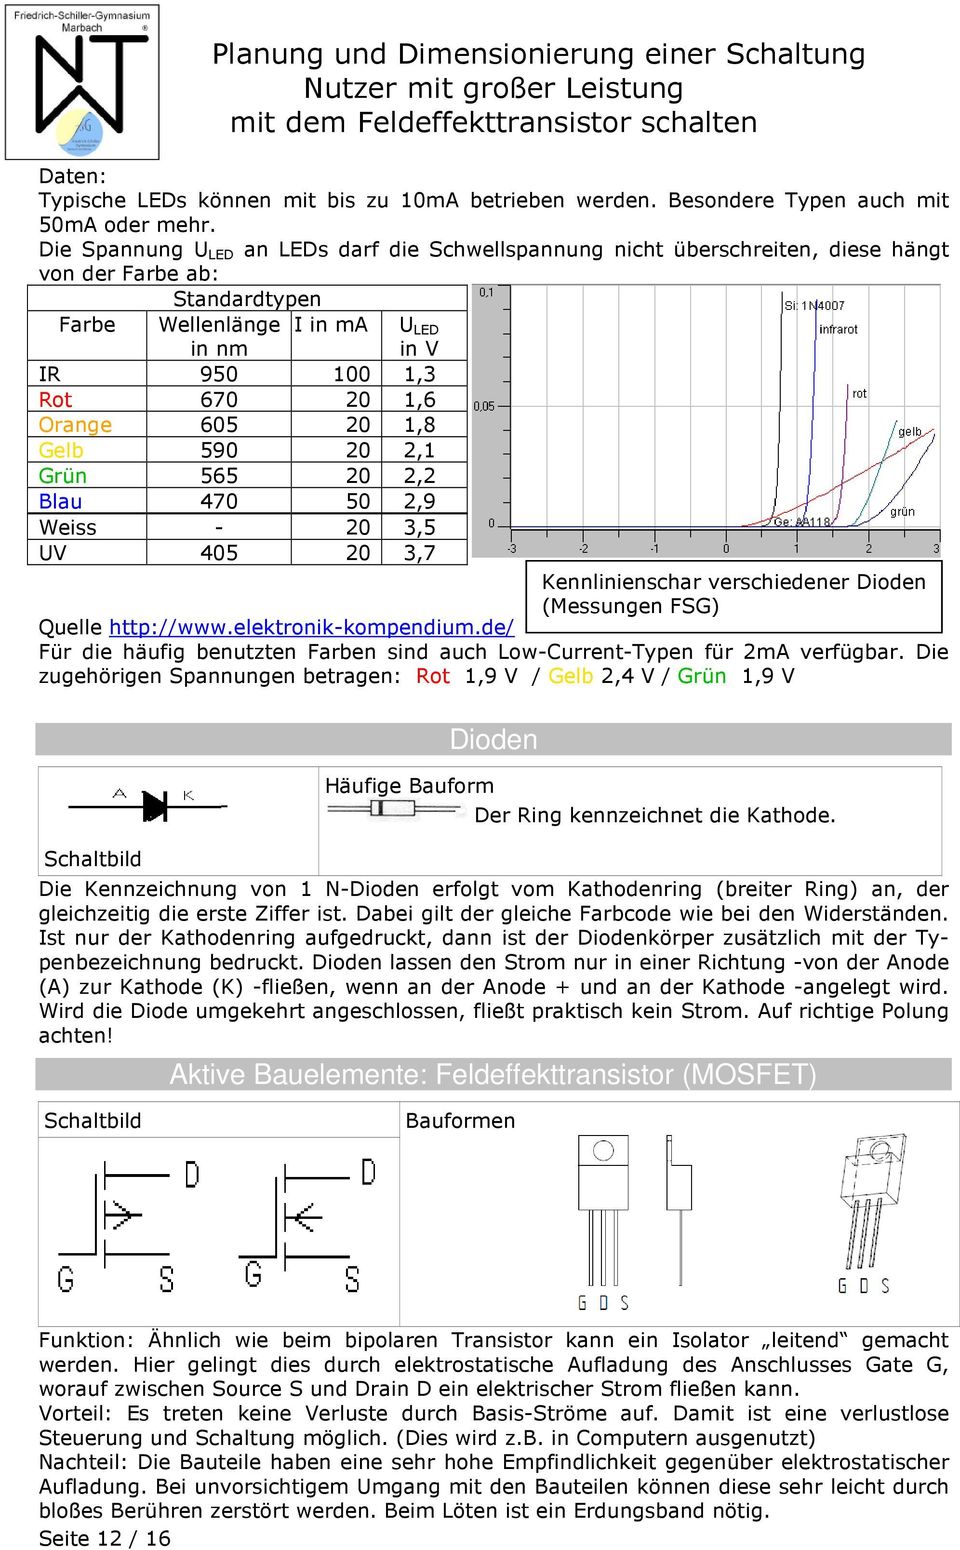 Gelb 590 0,1 Grün 565 0, Blau 470 50,9 Weiss - 0 3,5 V 405 0 3,7 Kennlinienschar verschiedener Dioden (Messungen FSG) Quelle http://www.elektronik-kompendium.